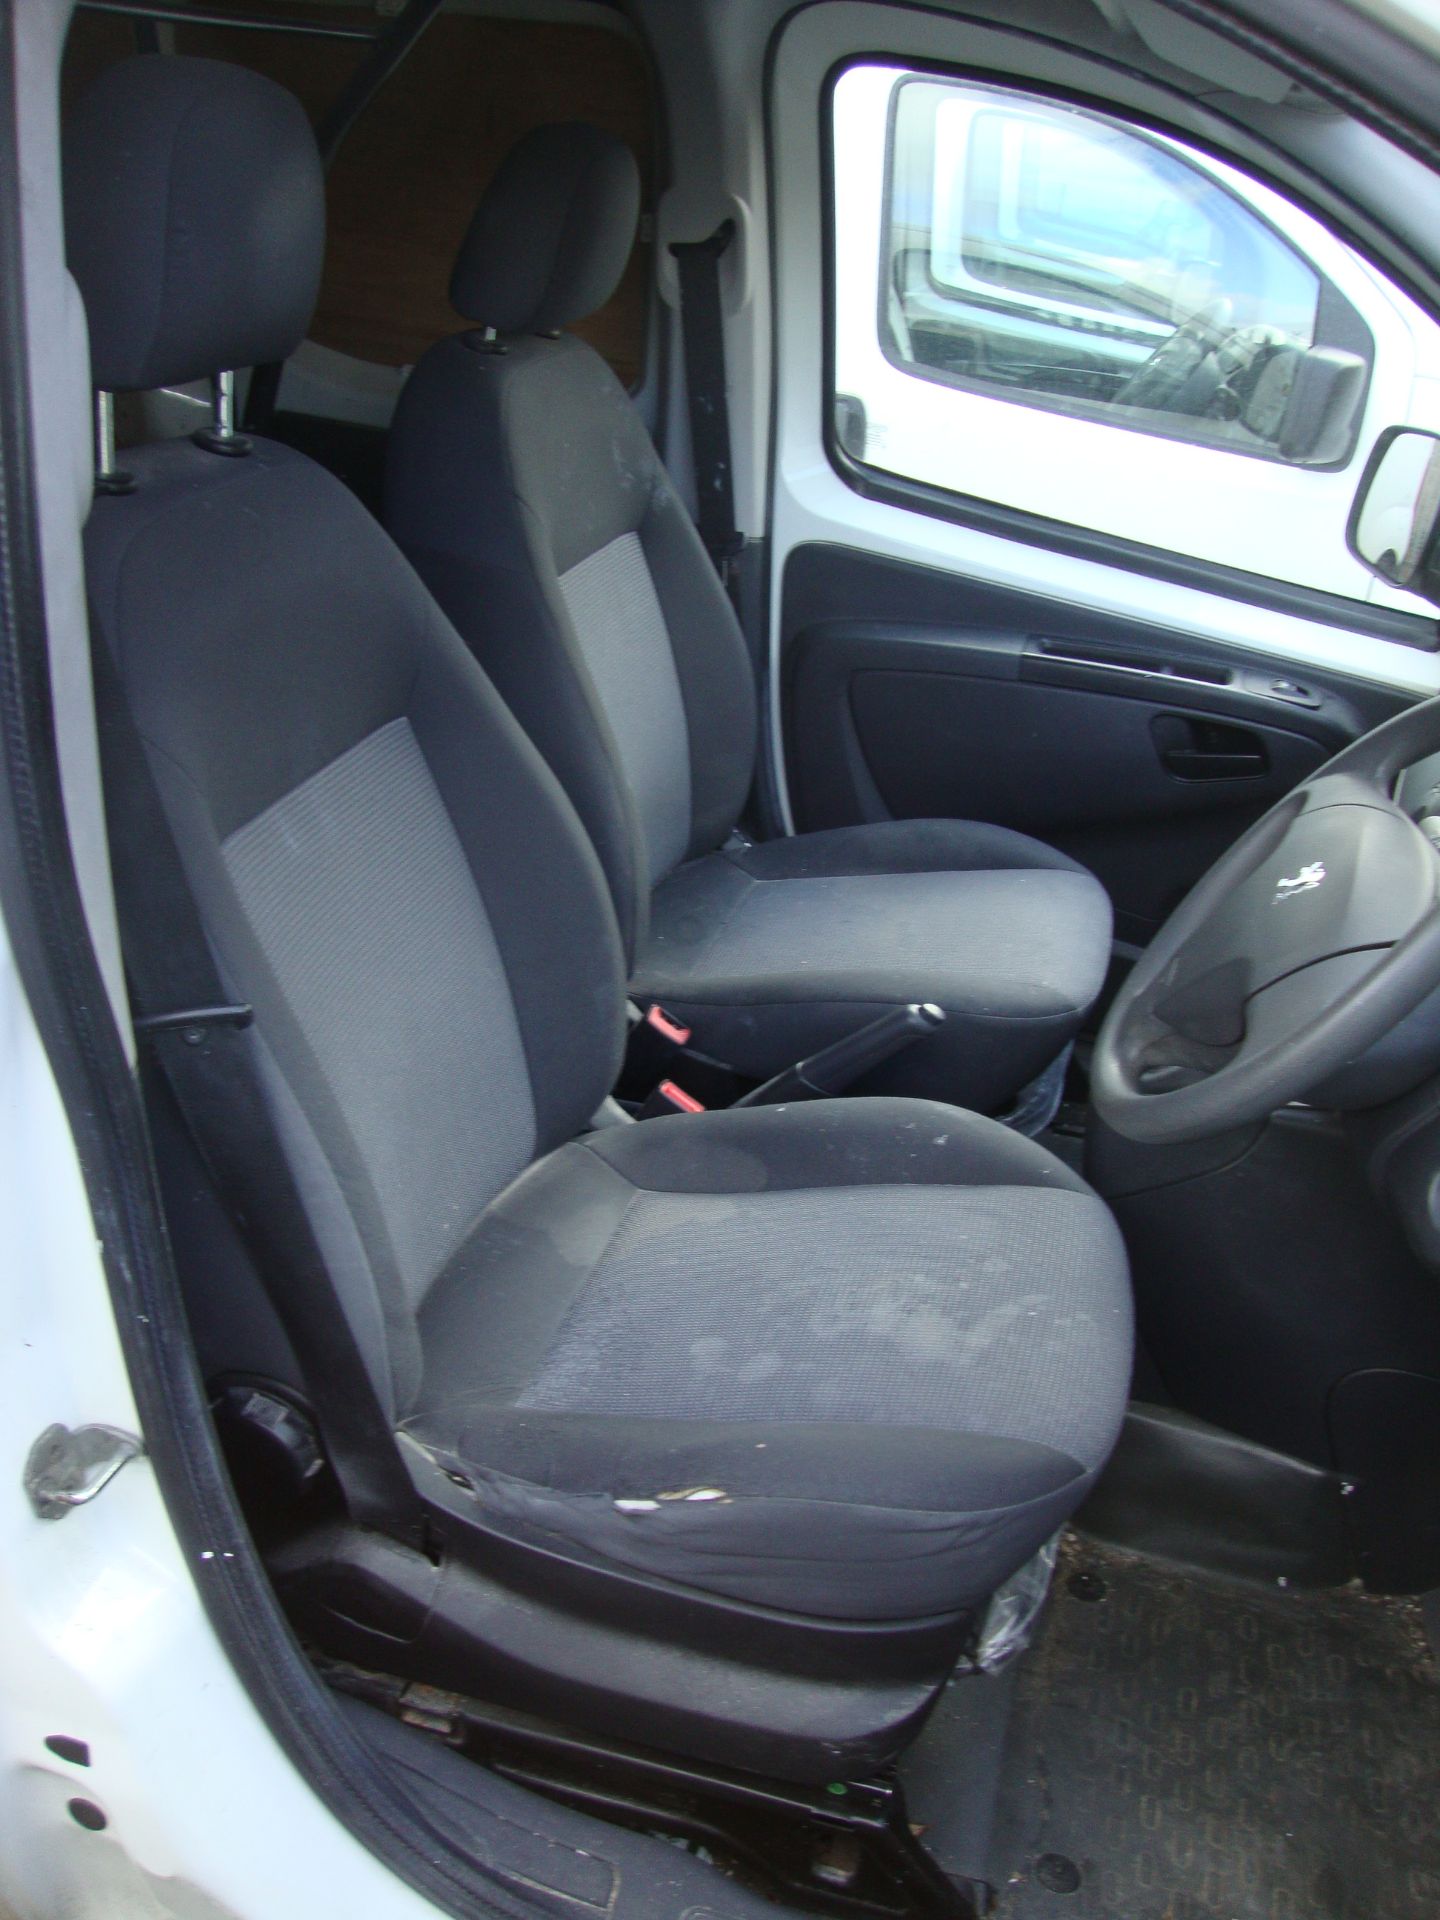 2010 Peugeot Bipper S HDi panel van - Image 11 of 11